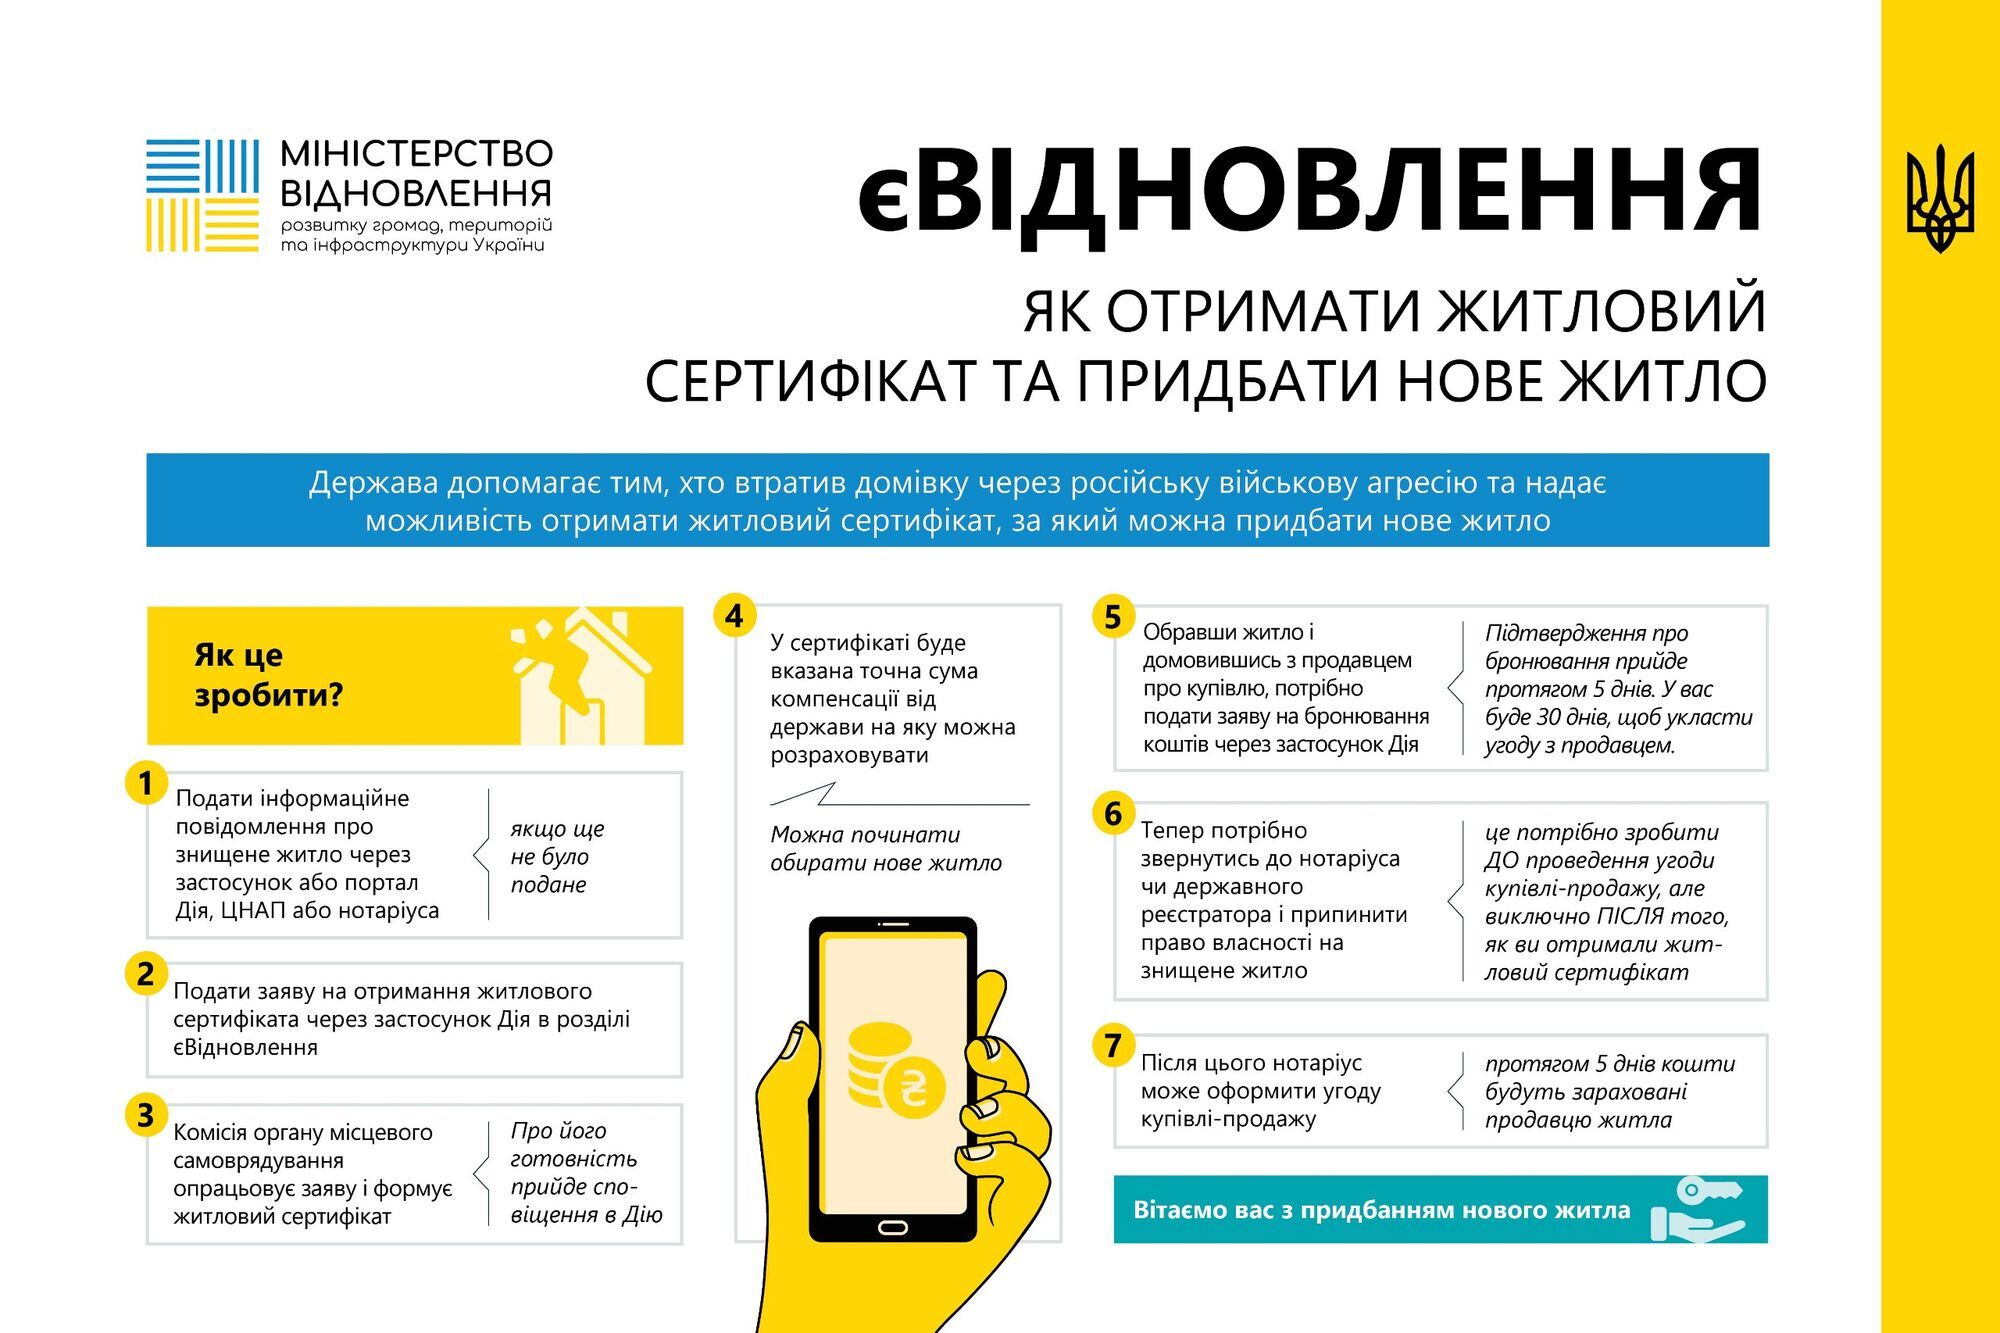 Как украинцам получить жилищный сертификат и приобрести жилье